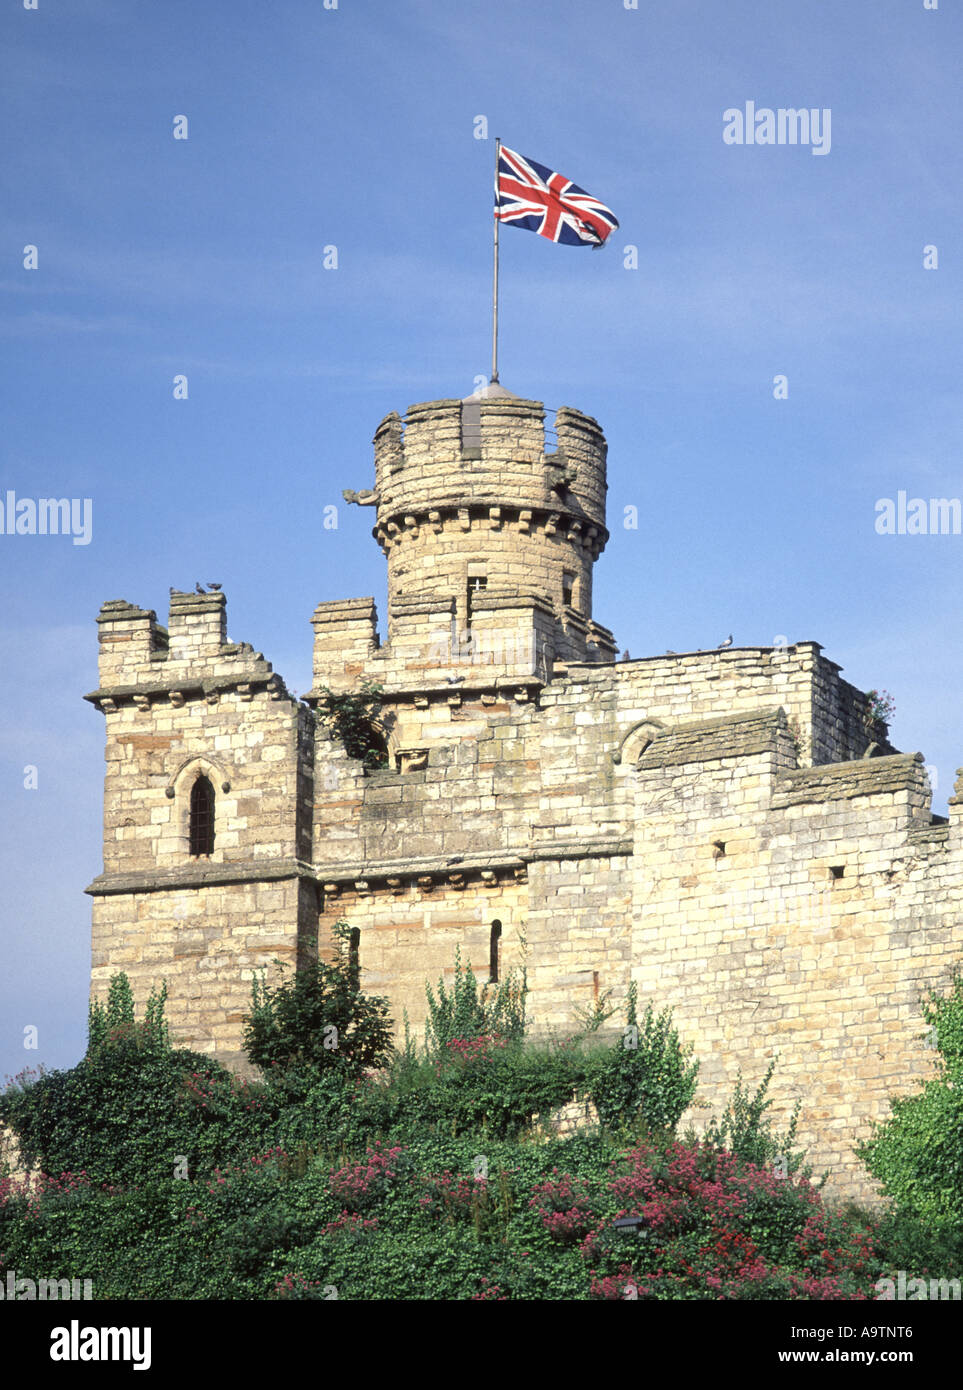 Tour du château de Lincoln avec drapeau de l'Union européenne Banque D'Images